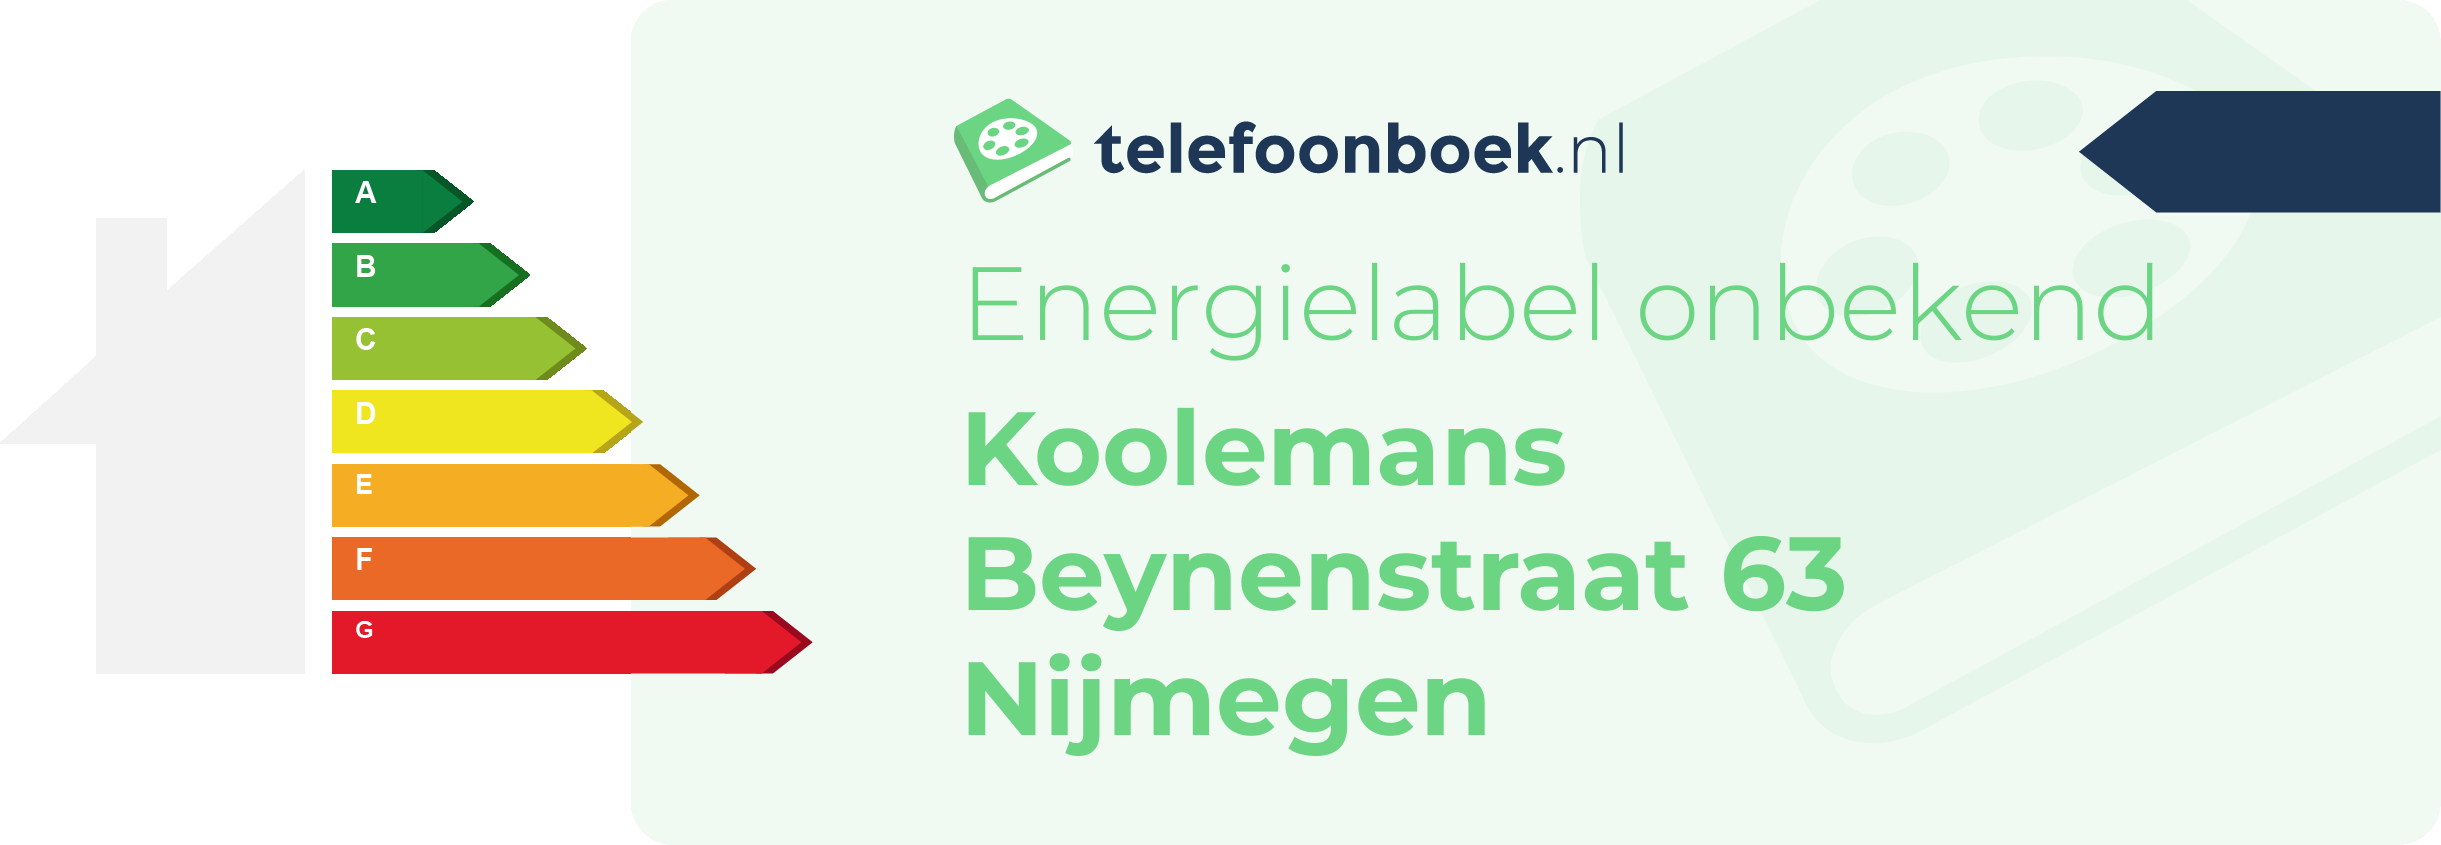 Energielabel Koolemans Beynenstraat 63 Nijmegen